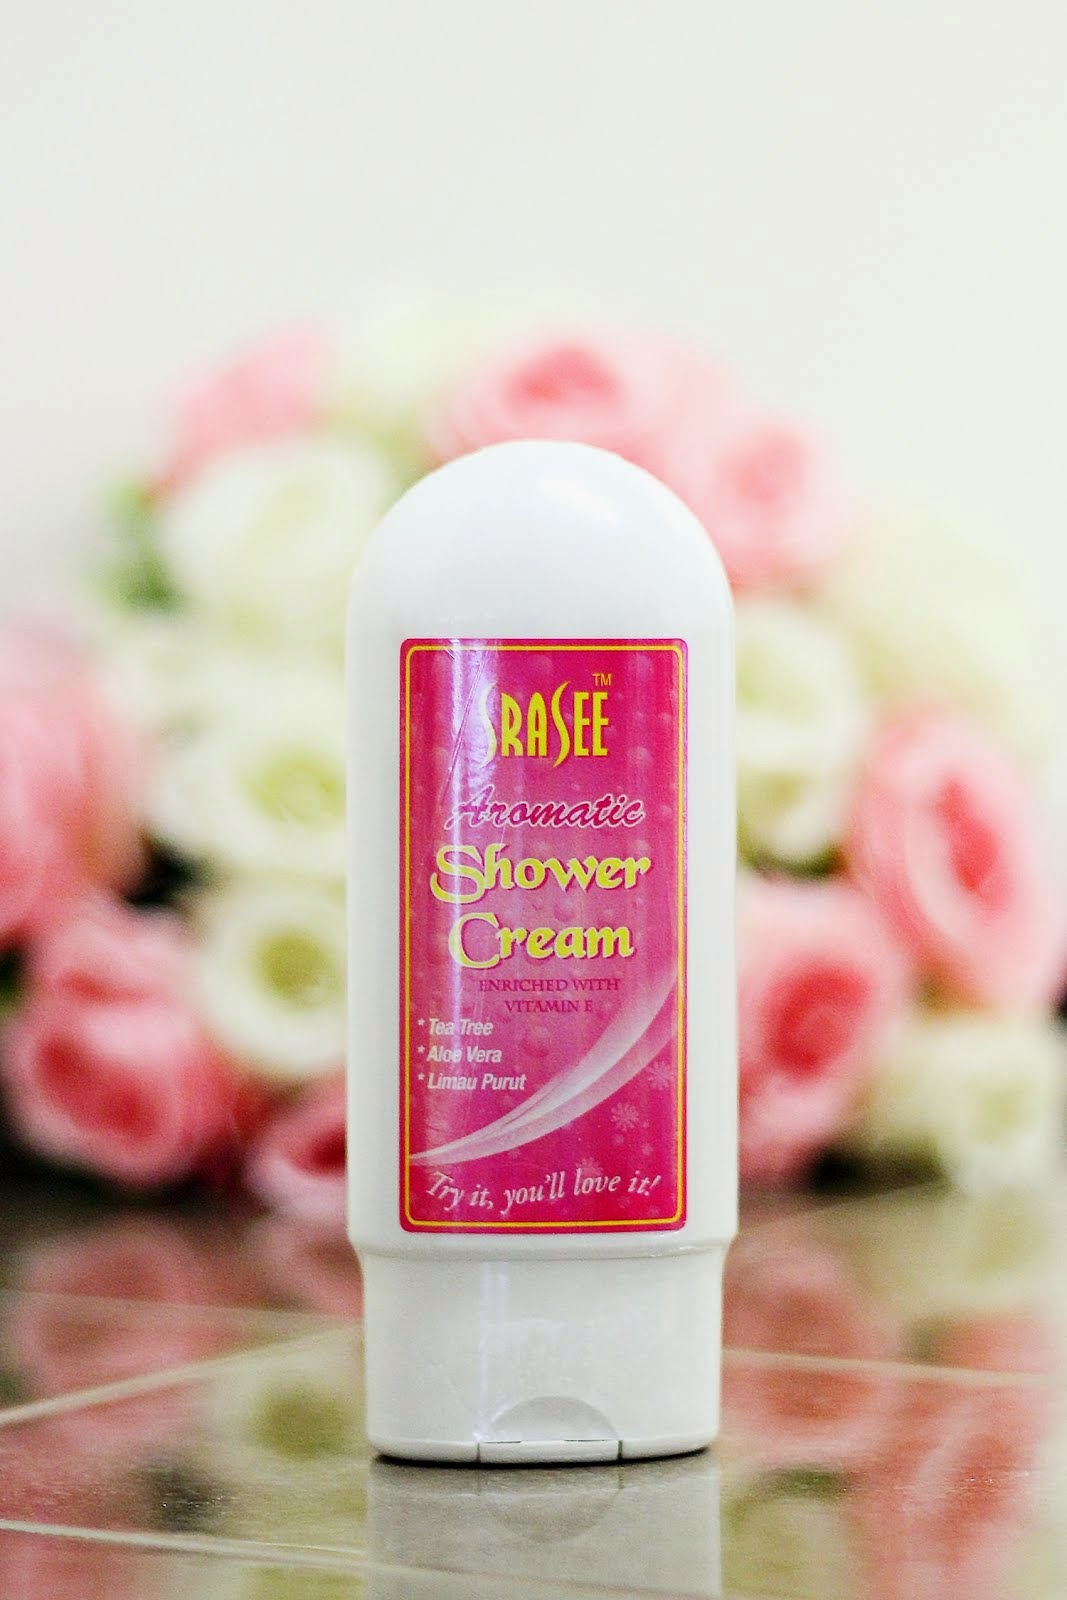 Aromatic Shower Cream